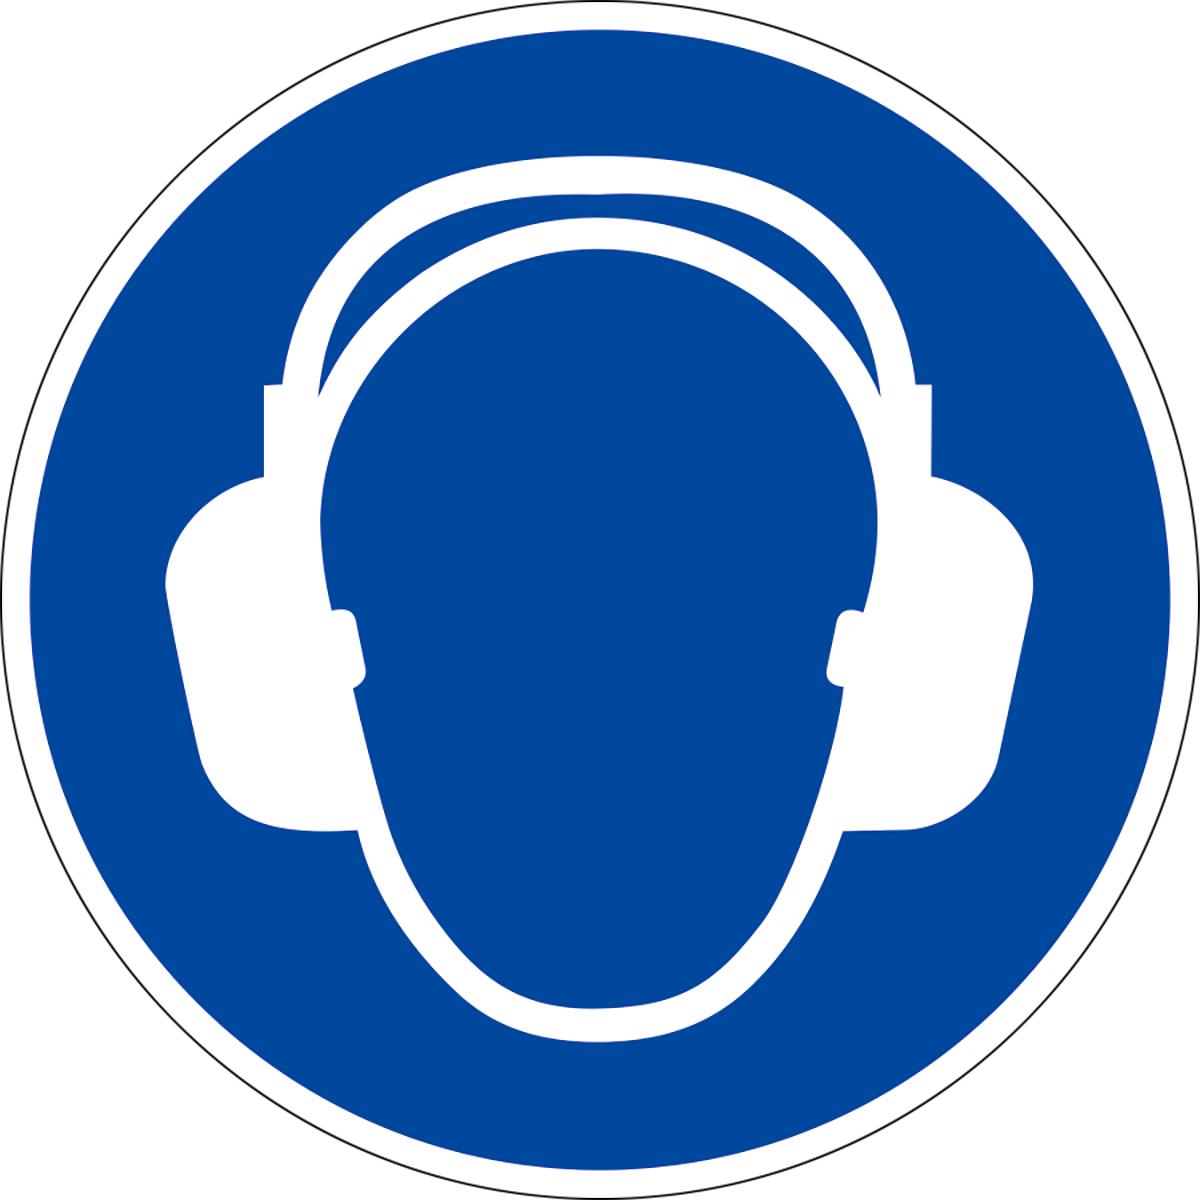 Gehörschutz benutzen